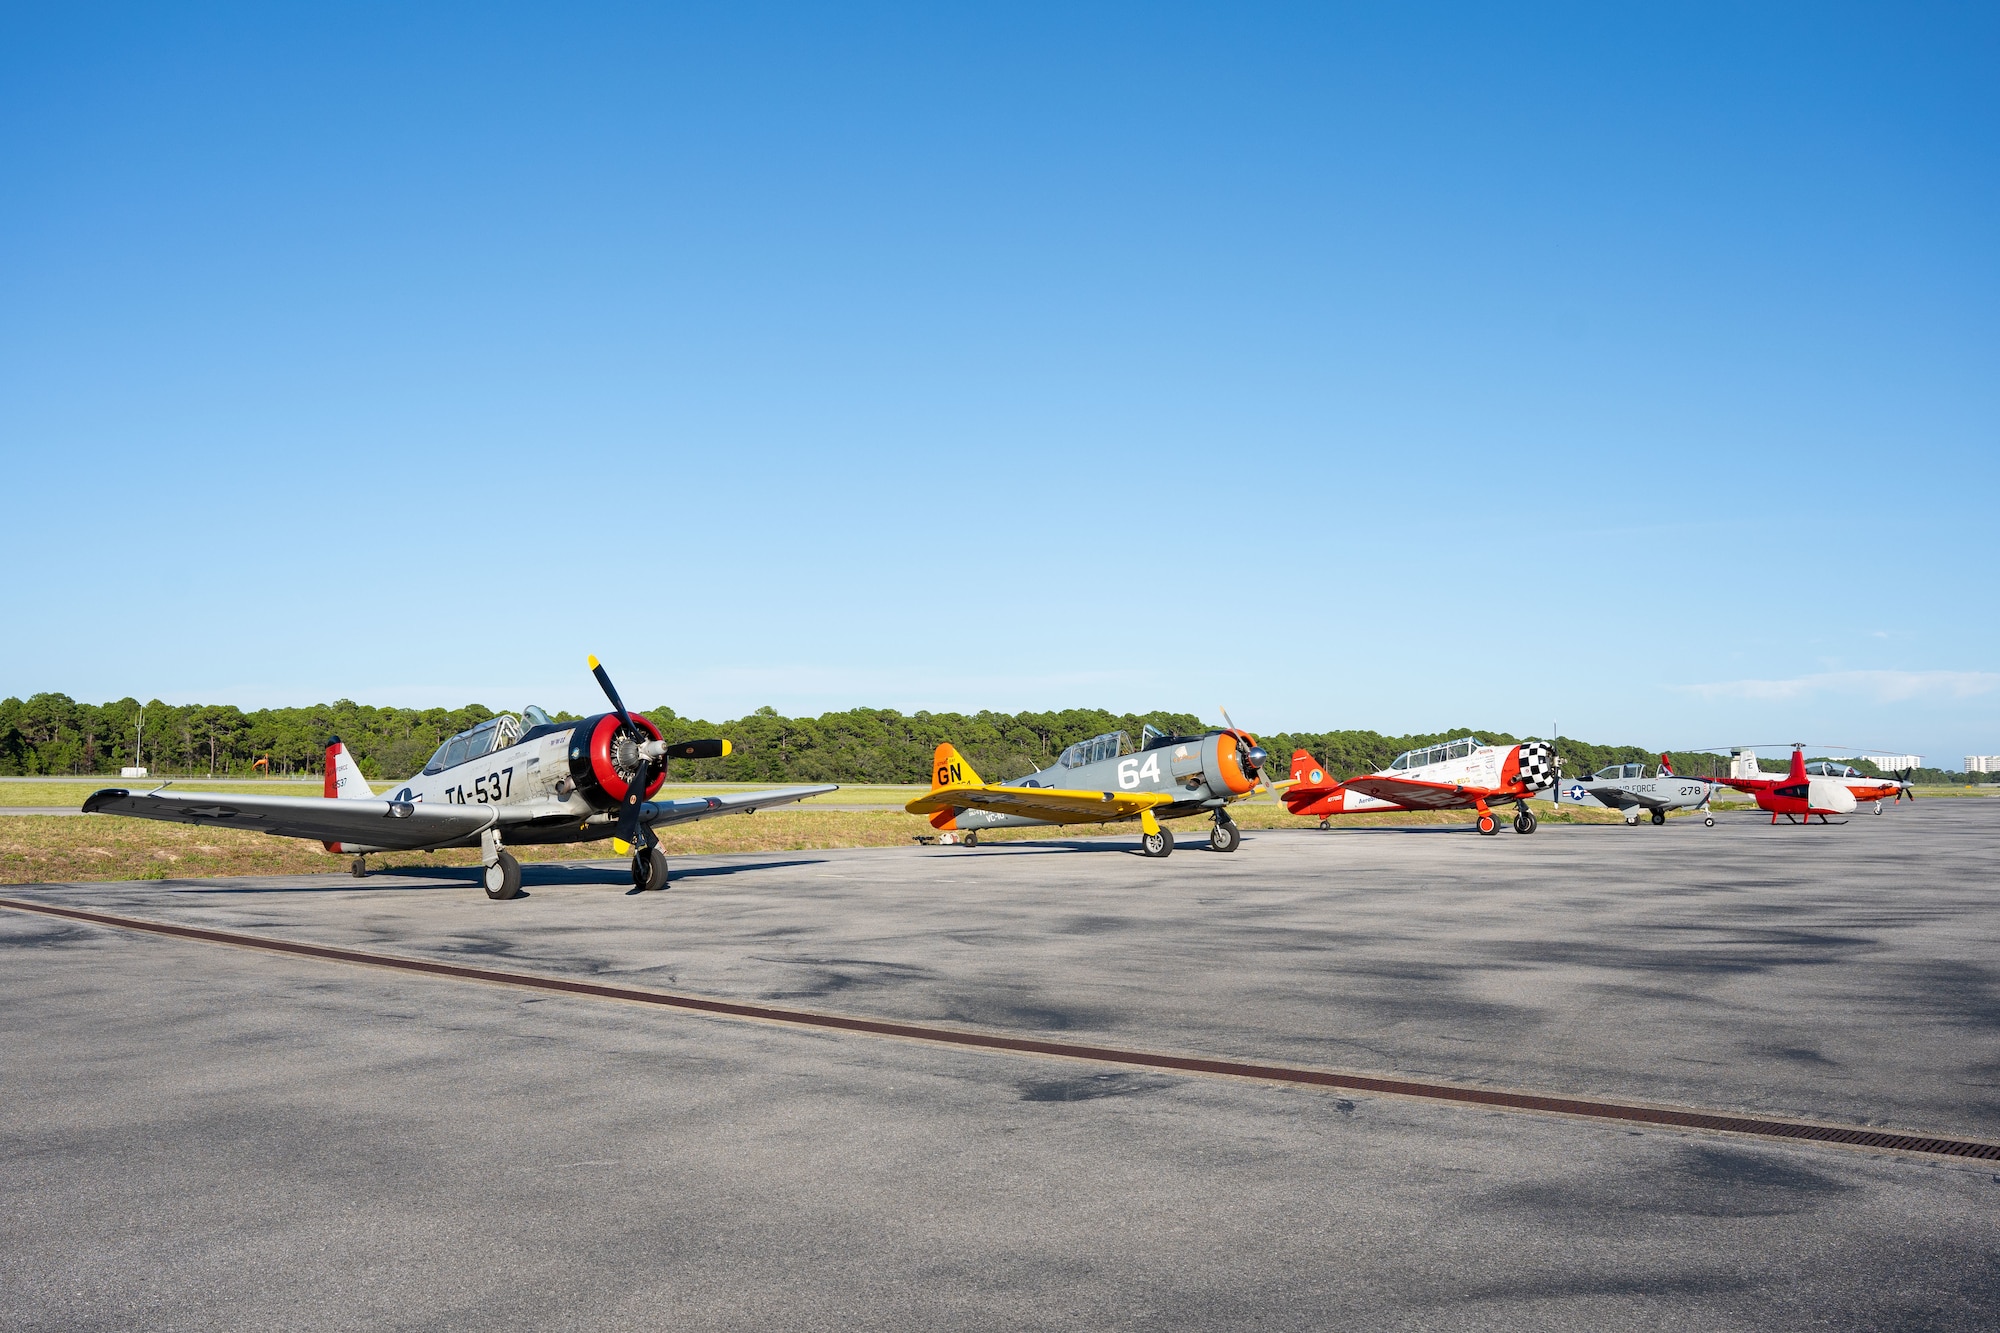 Civilian aircraft sit on display at Destin Executive Airport